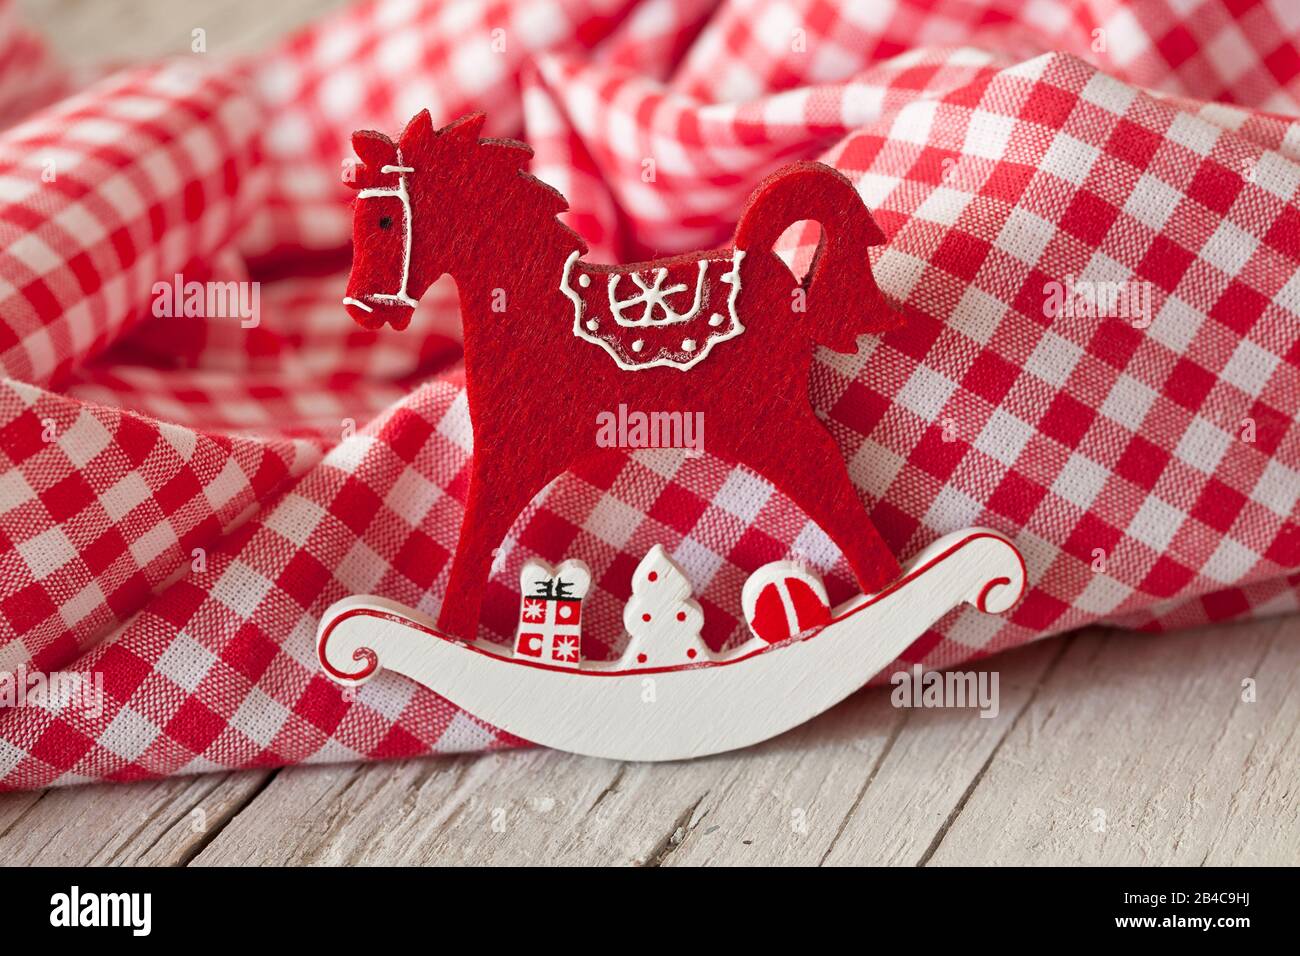 Dekoratives Weihnachtsfest nordischer Stil mit rockiger Pferdeornamentik in rot-weiß kariertem Stoff Stockfoto